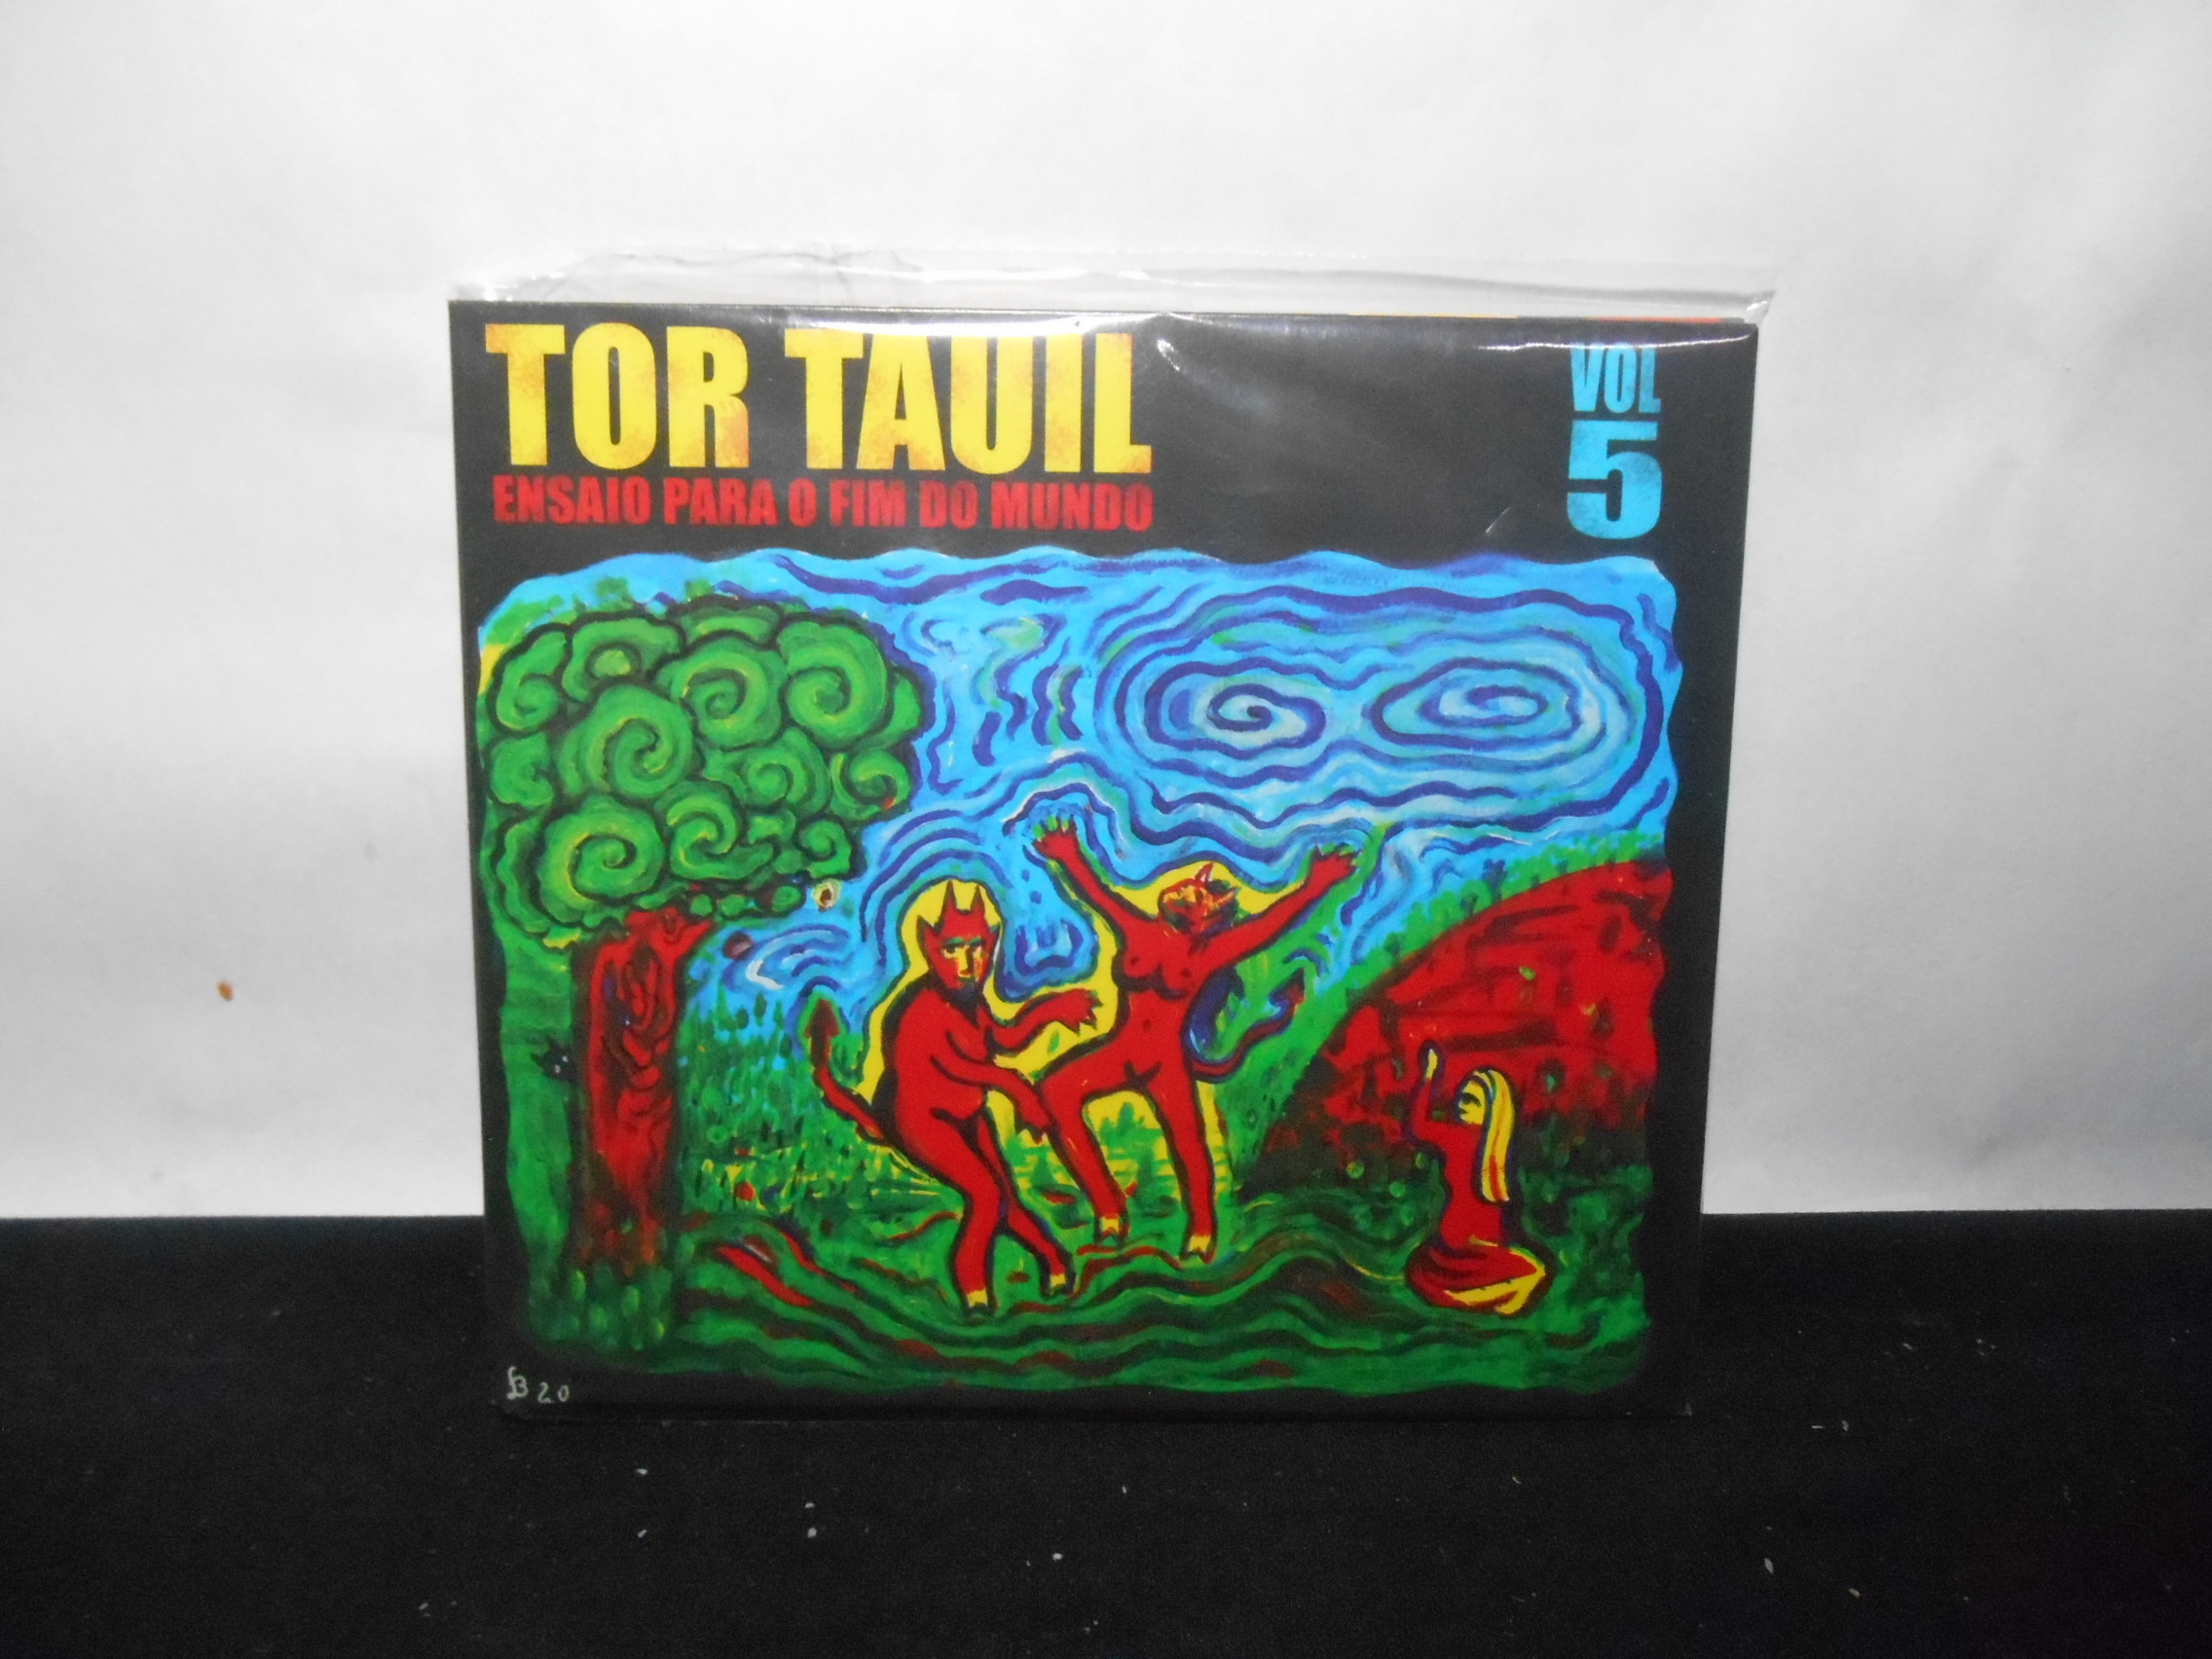 CD - Tor Tauil - Vol 5 Ensaio para o Fim do Mundo (Lacrado/Paper Sleeve)